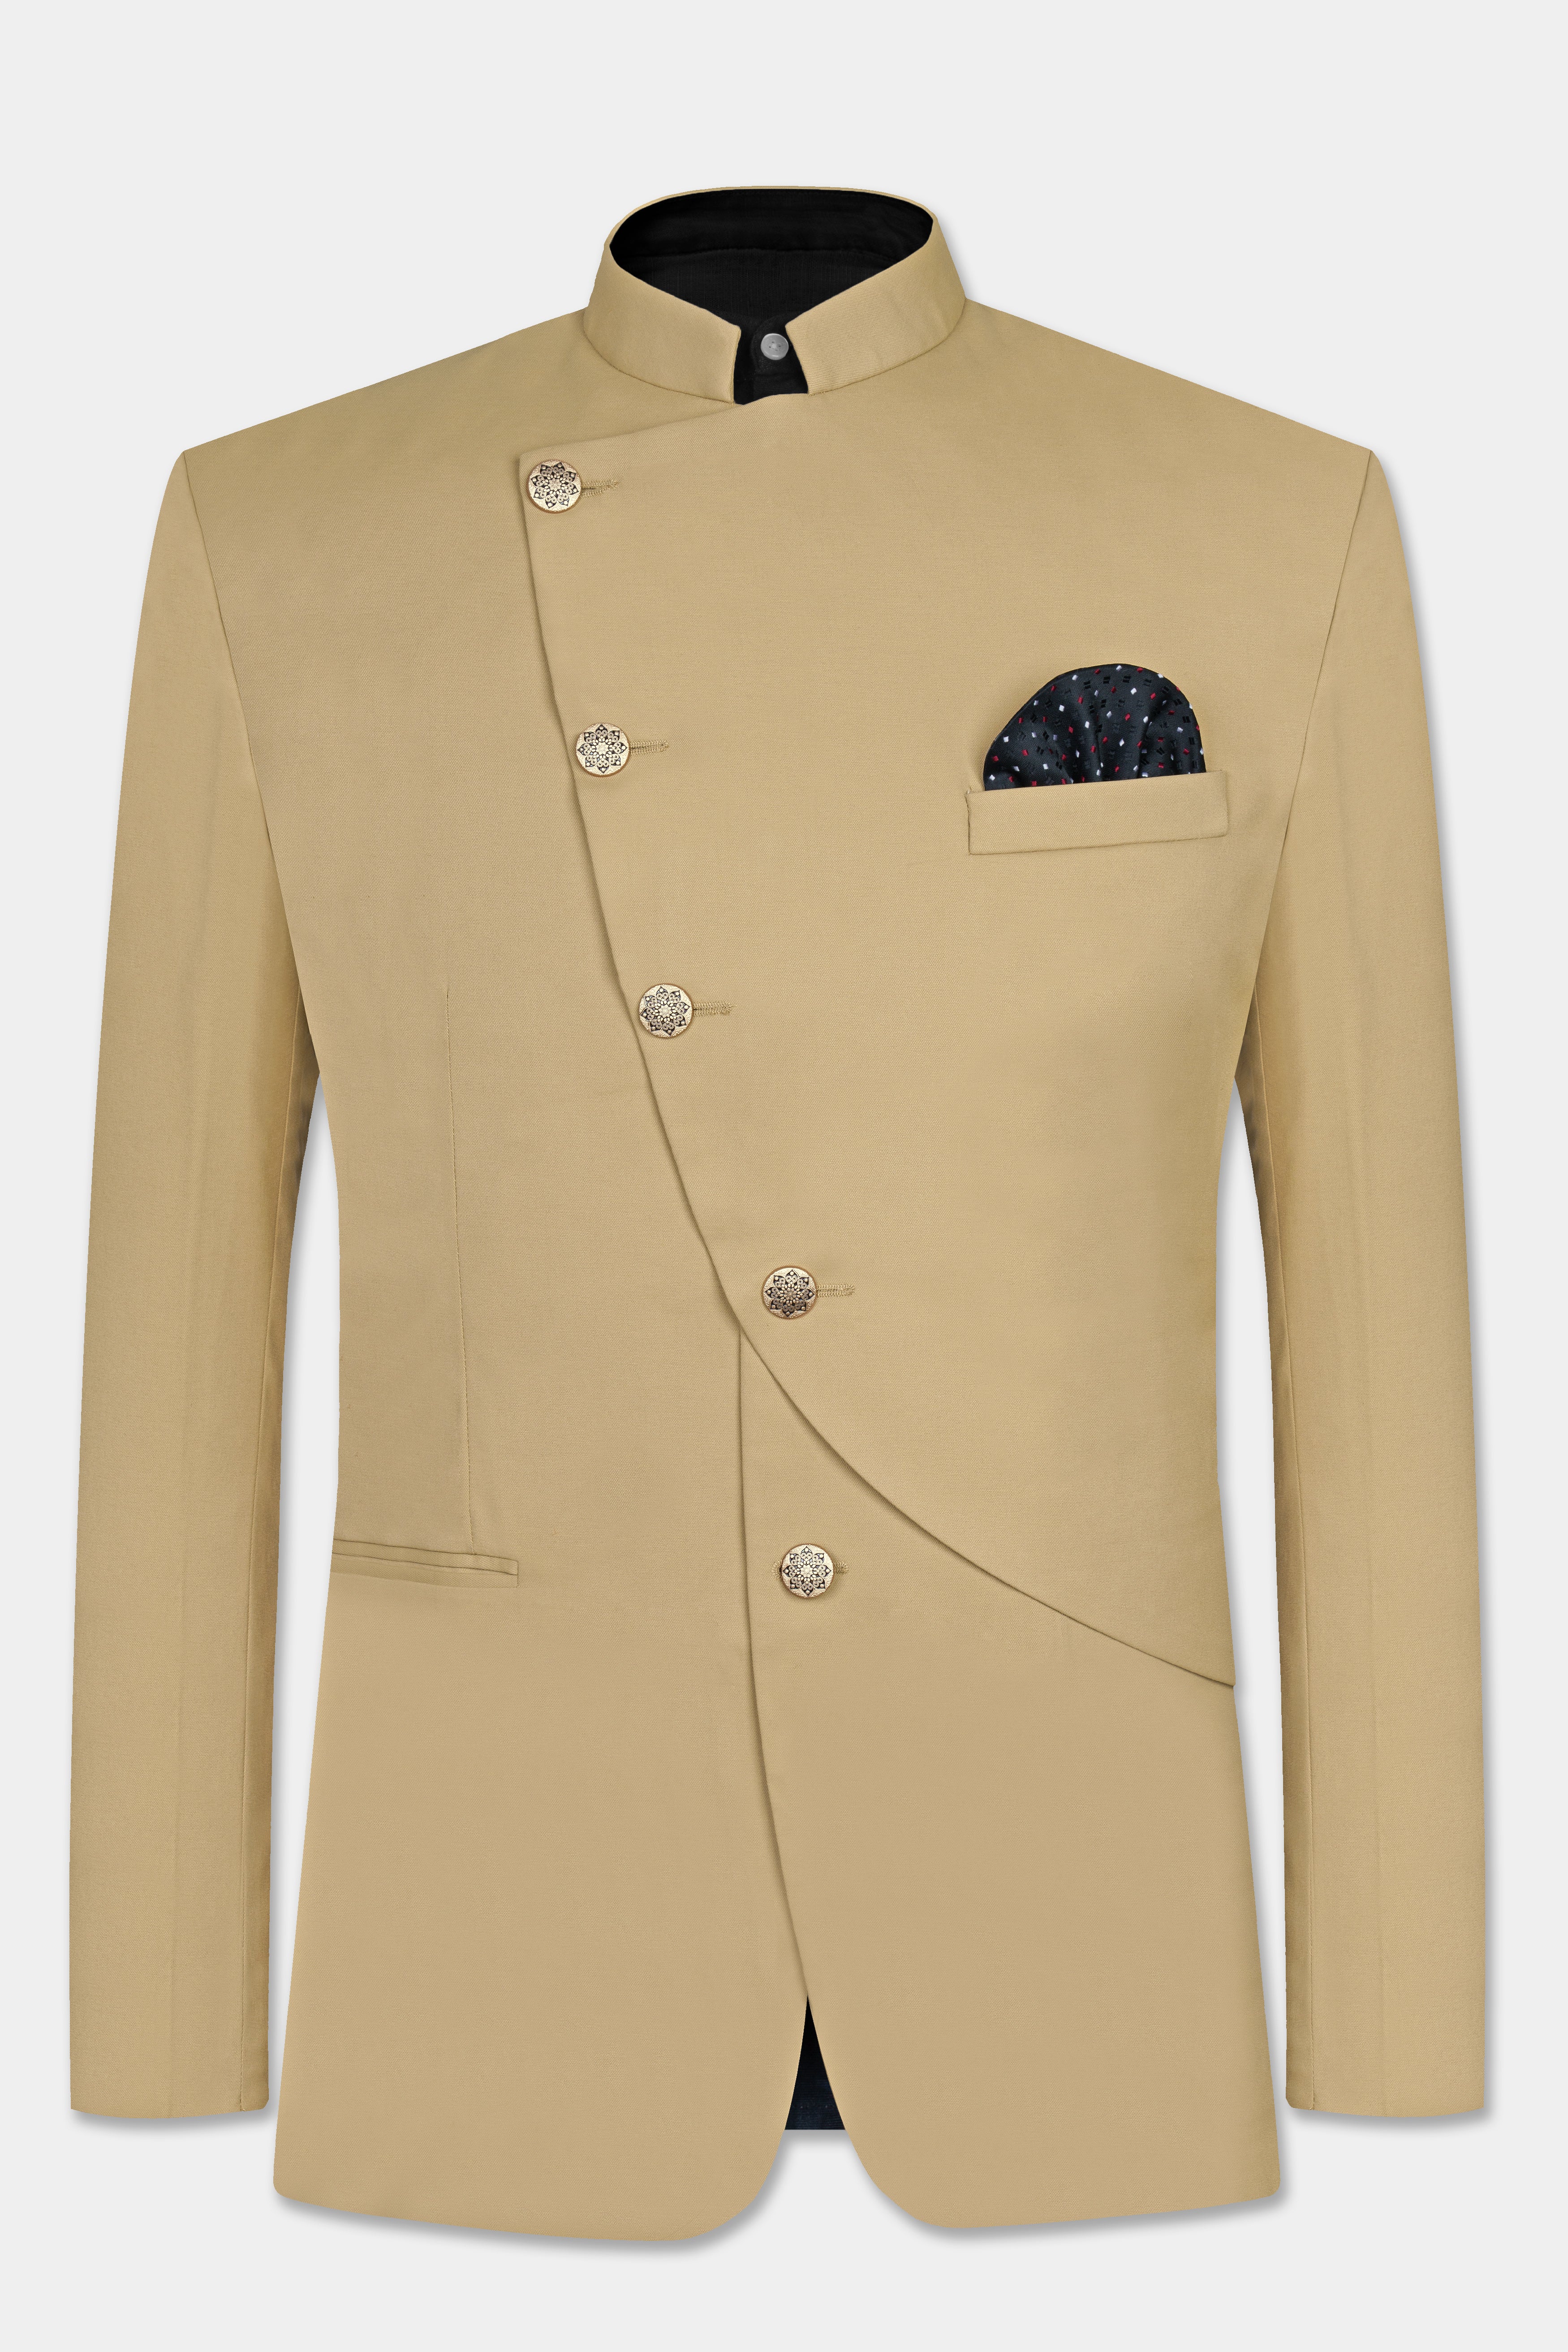 Shadow Brown Cross Placket Premium Cotton Designer Suits